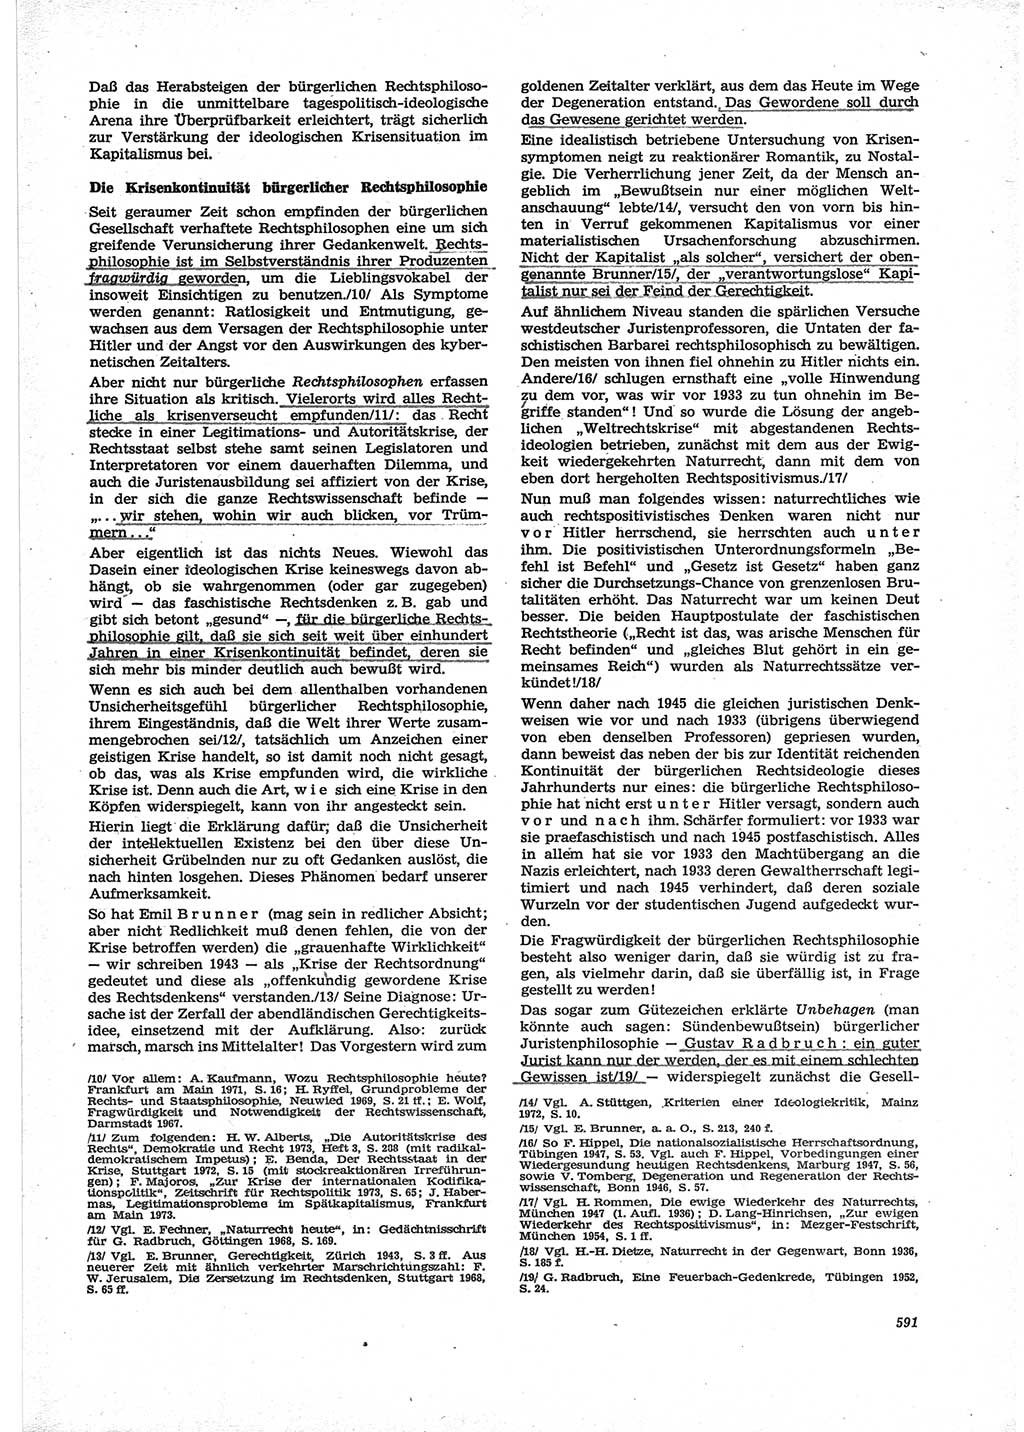 Neue Justiz (NJ), Zeitschrift für Recht und Rechtswissenschaft [Deutsche Demokratische Republik (DDR)], 28. Jahrgang 1974, Seite 591 (NJ DDR 1974, S. 591)